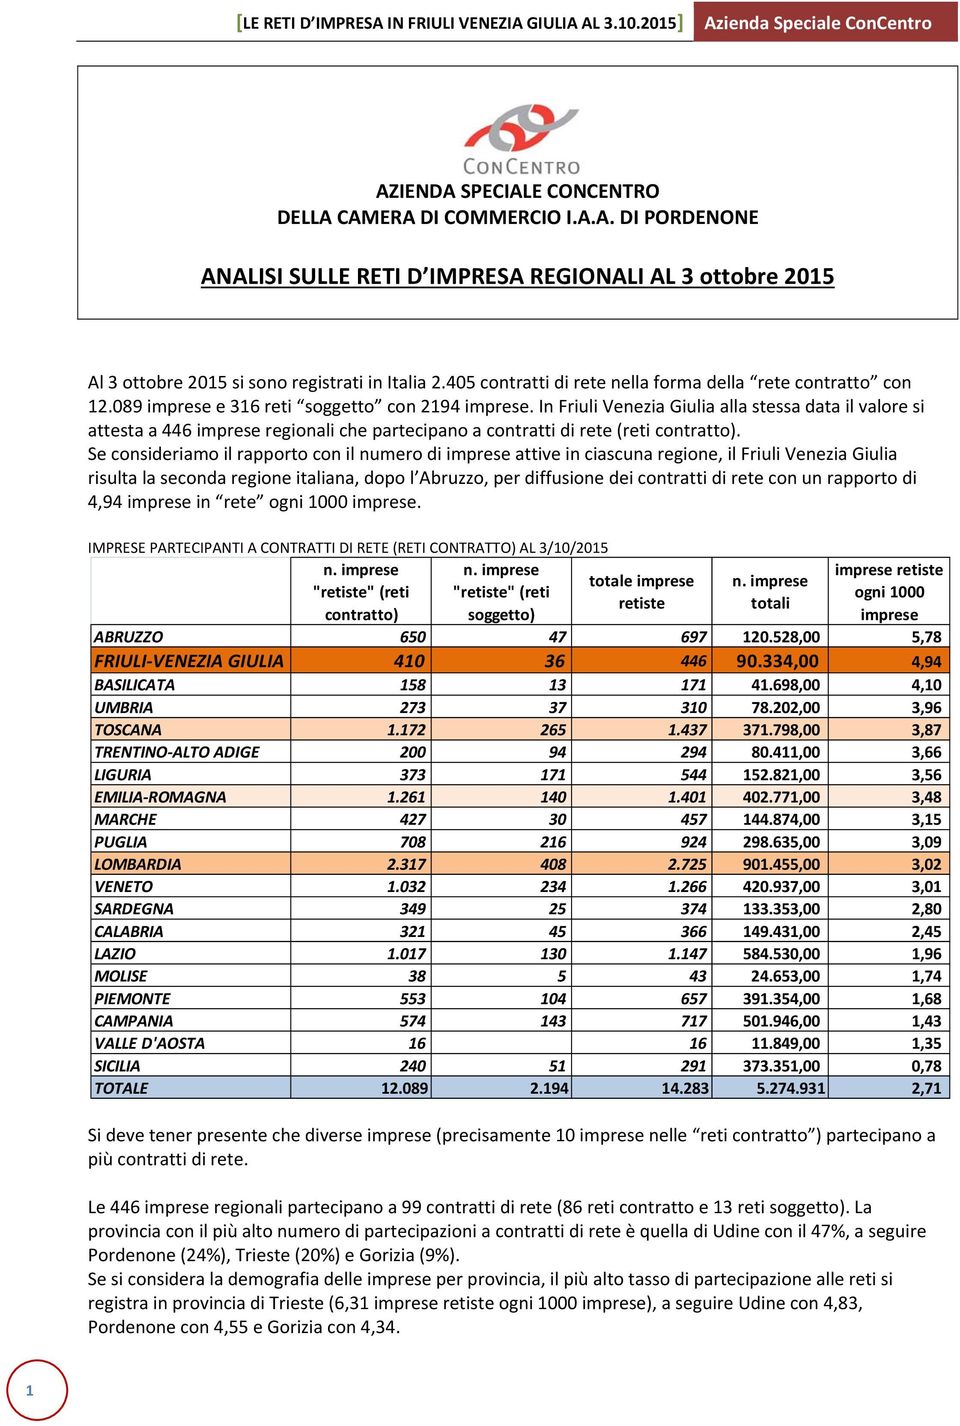 In Friuli Venezia Giulia alla stessa data il valore si attesta a 446 imprese regionali che partecipano a contratti di rete (reti contratto).